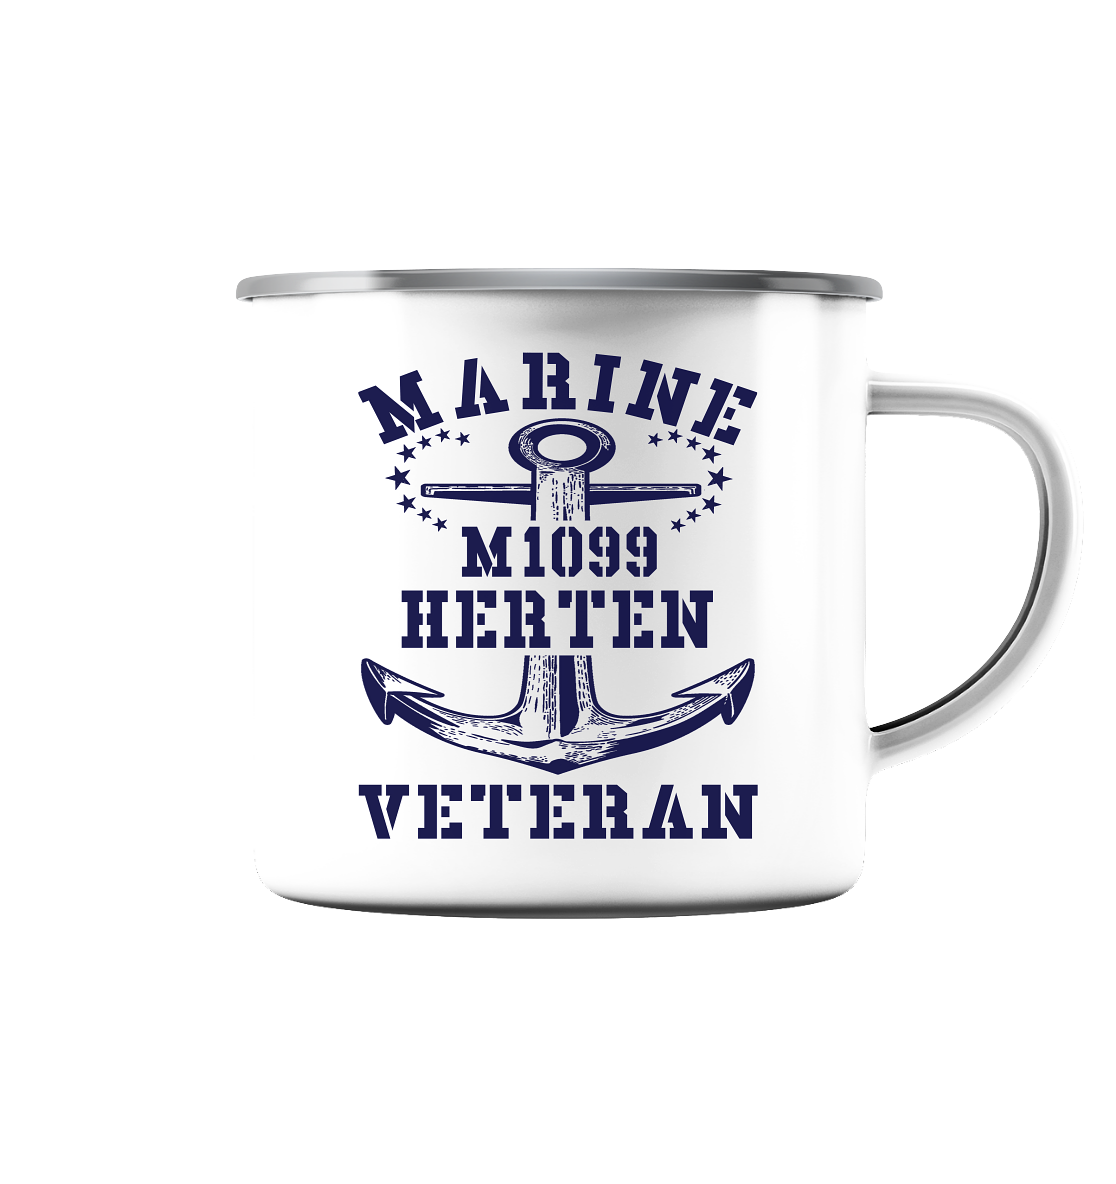 M1099 HERTEN Marine Veteran - Emaille Tasse (Silber)